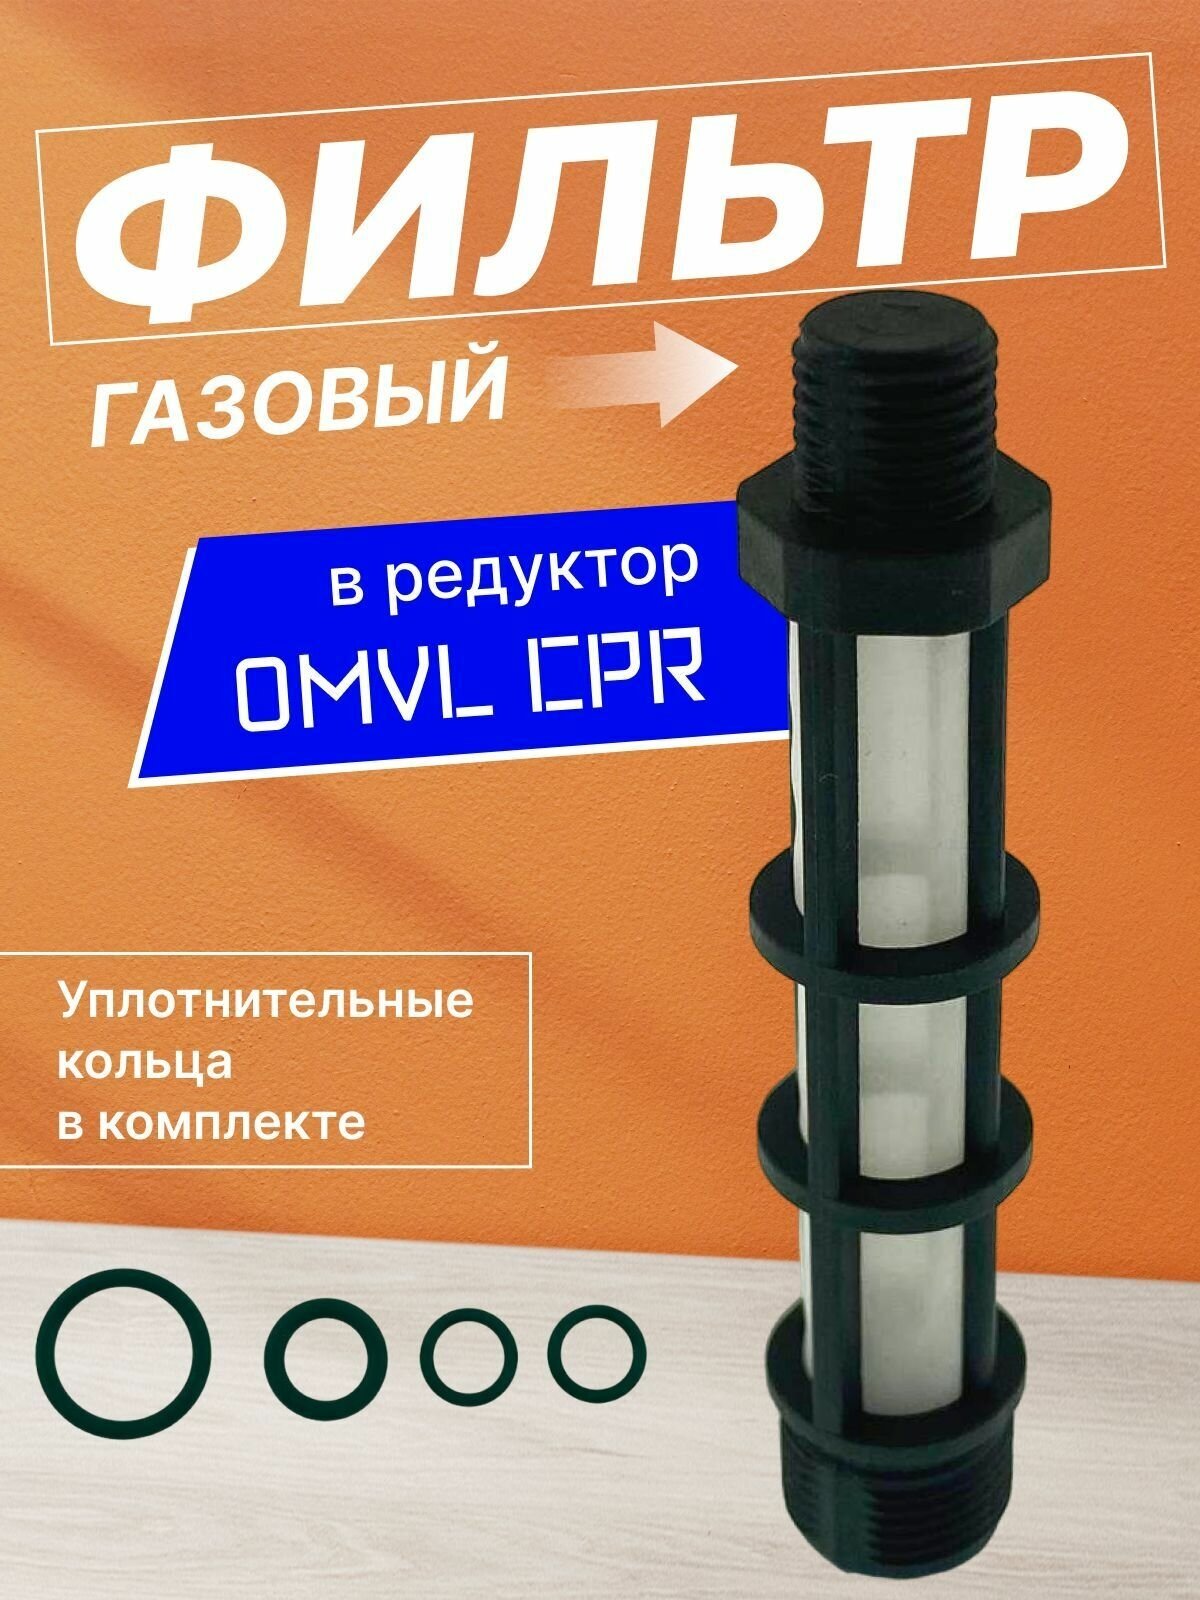 Фильтр газа редуктора OMVL CPR (одноступенчатый)